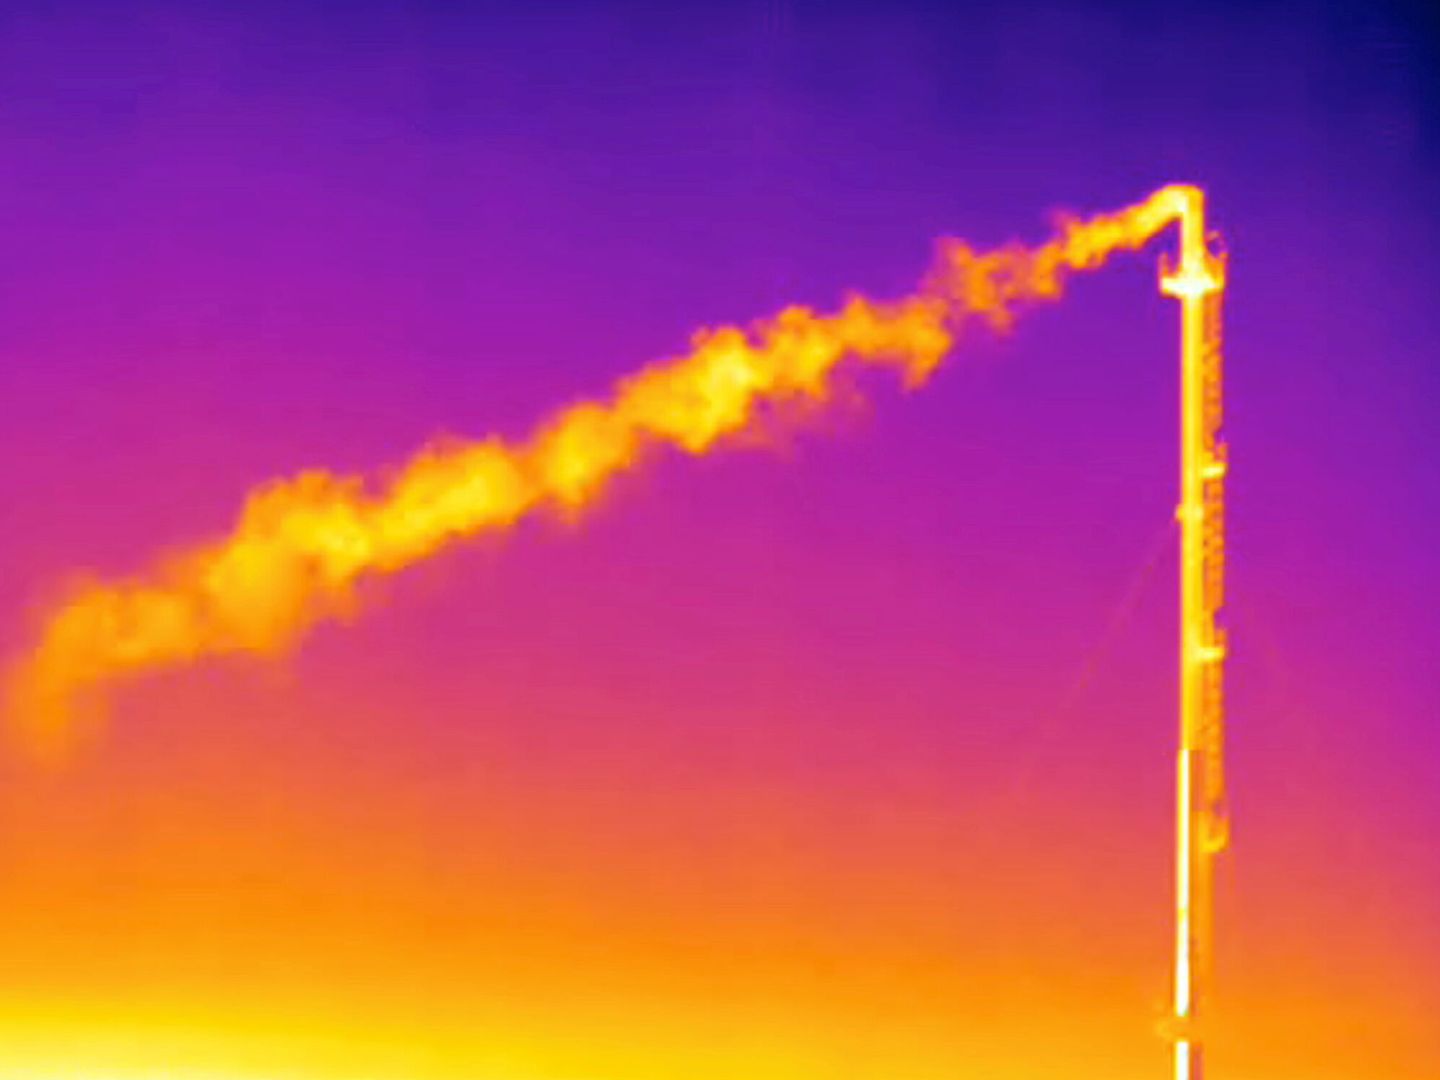 Emisión atmosférica de metano en Italia, capada por una cámara infrarroja. (Reuters)